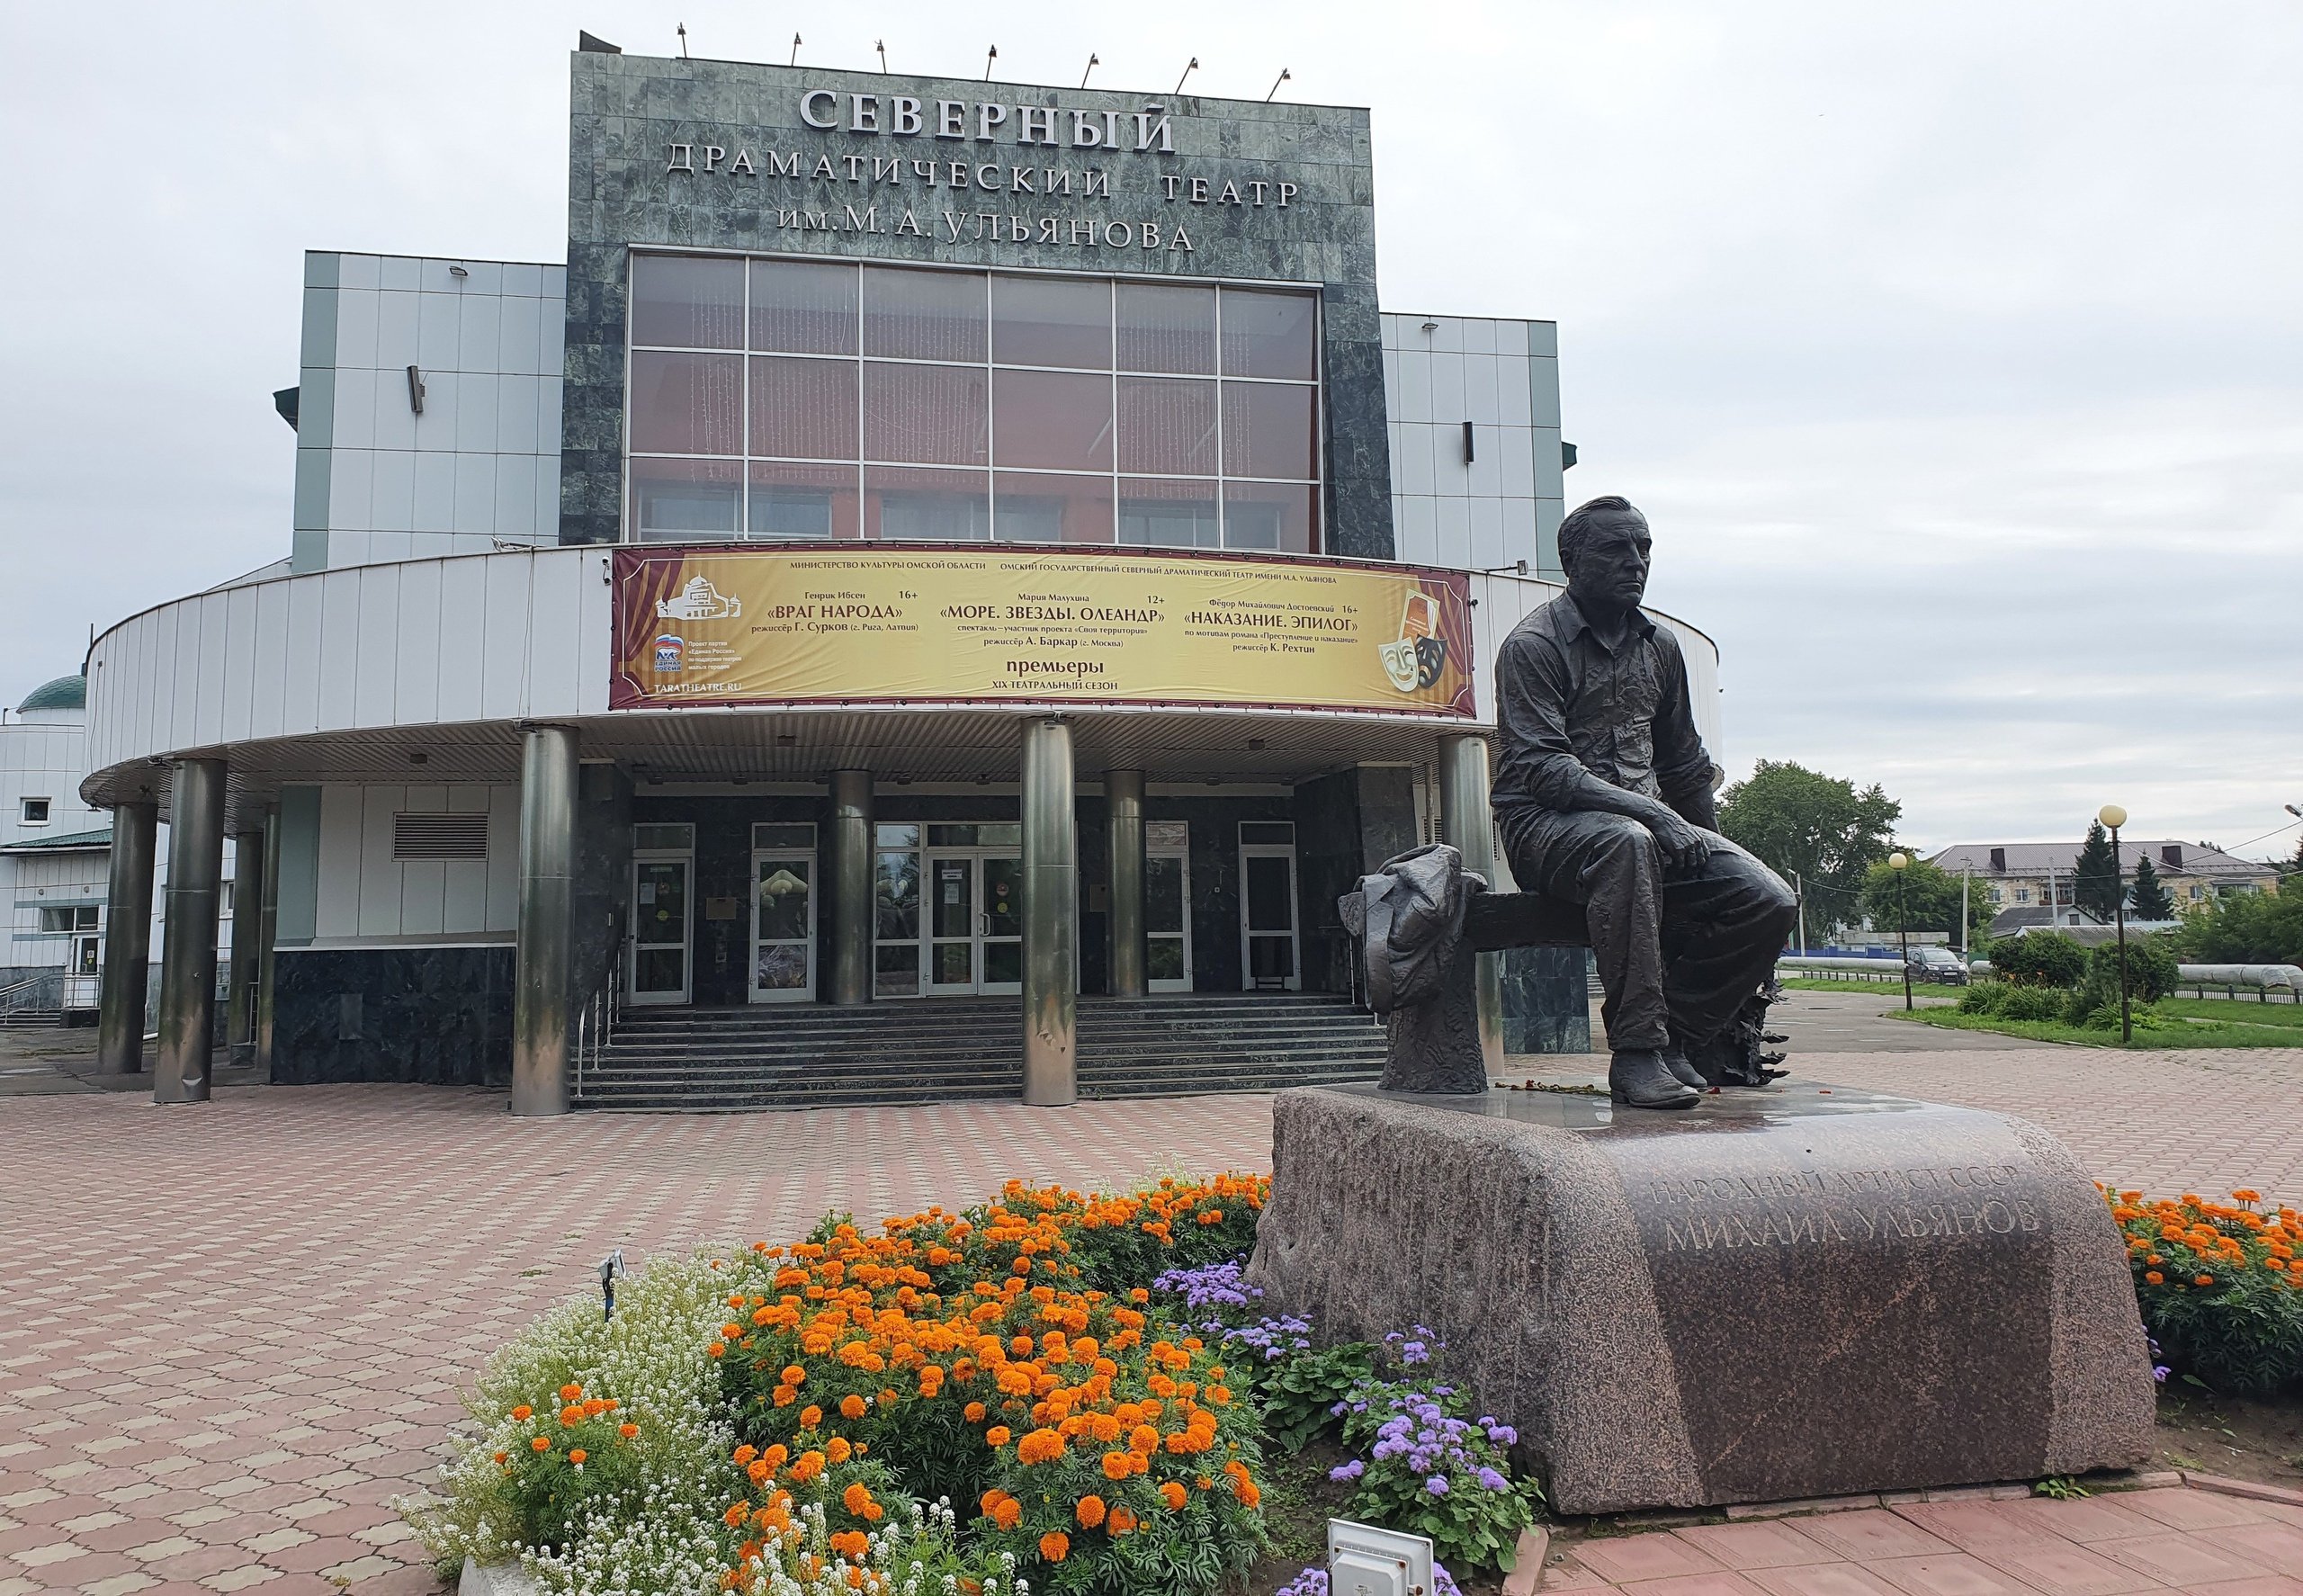 Перед зданием театра установлен памятник актеру Михаилу Ульянову